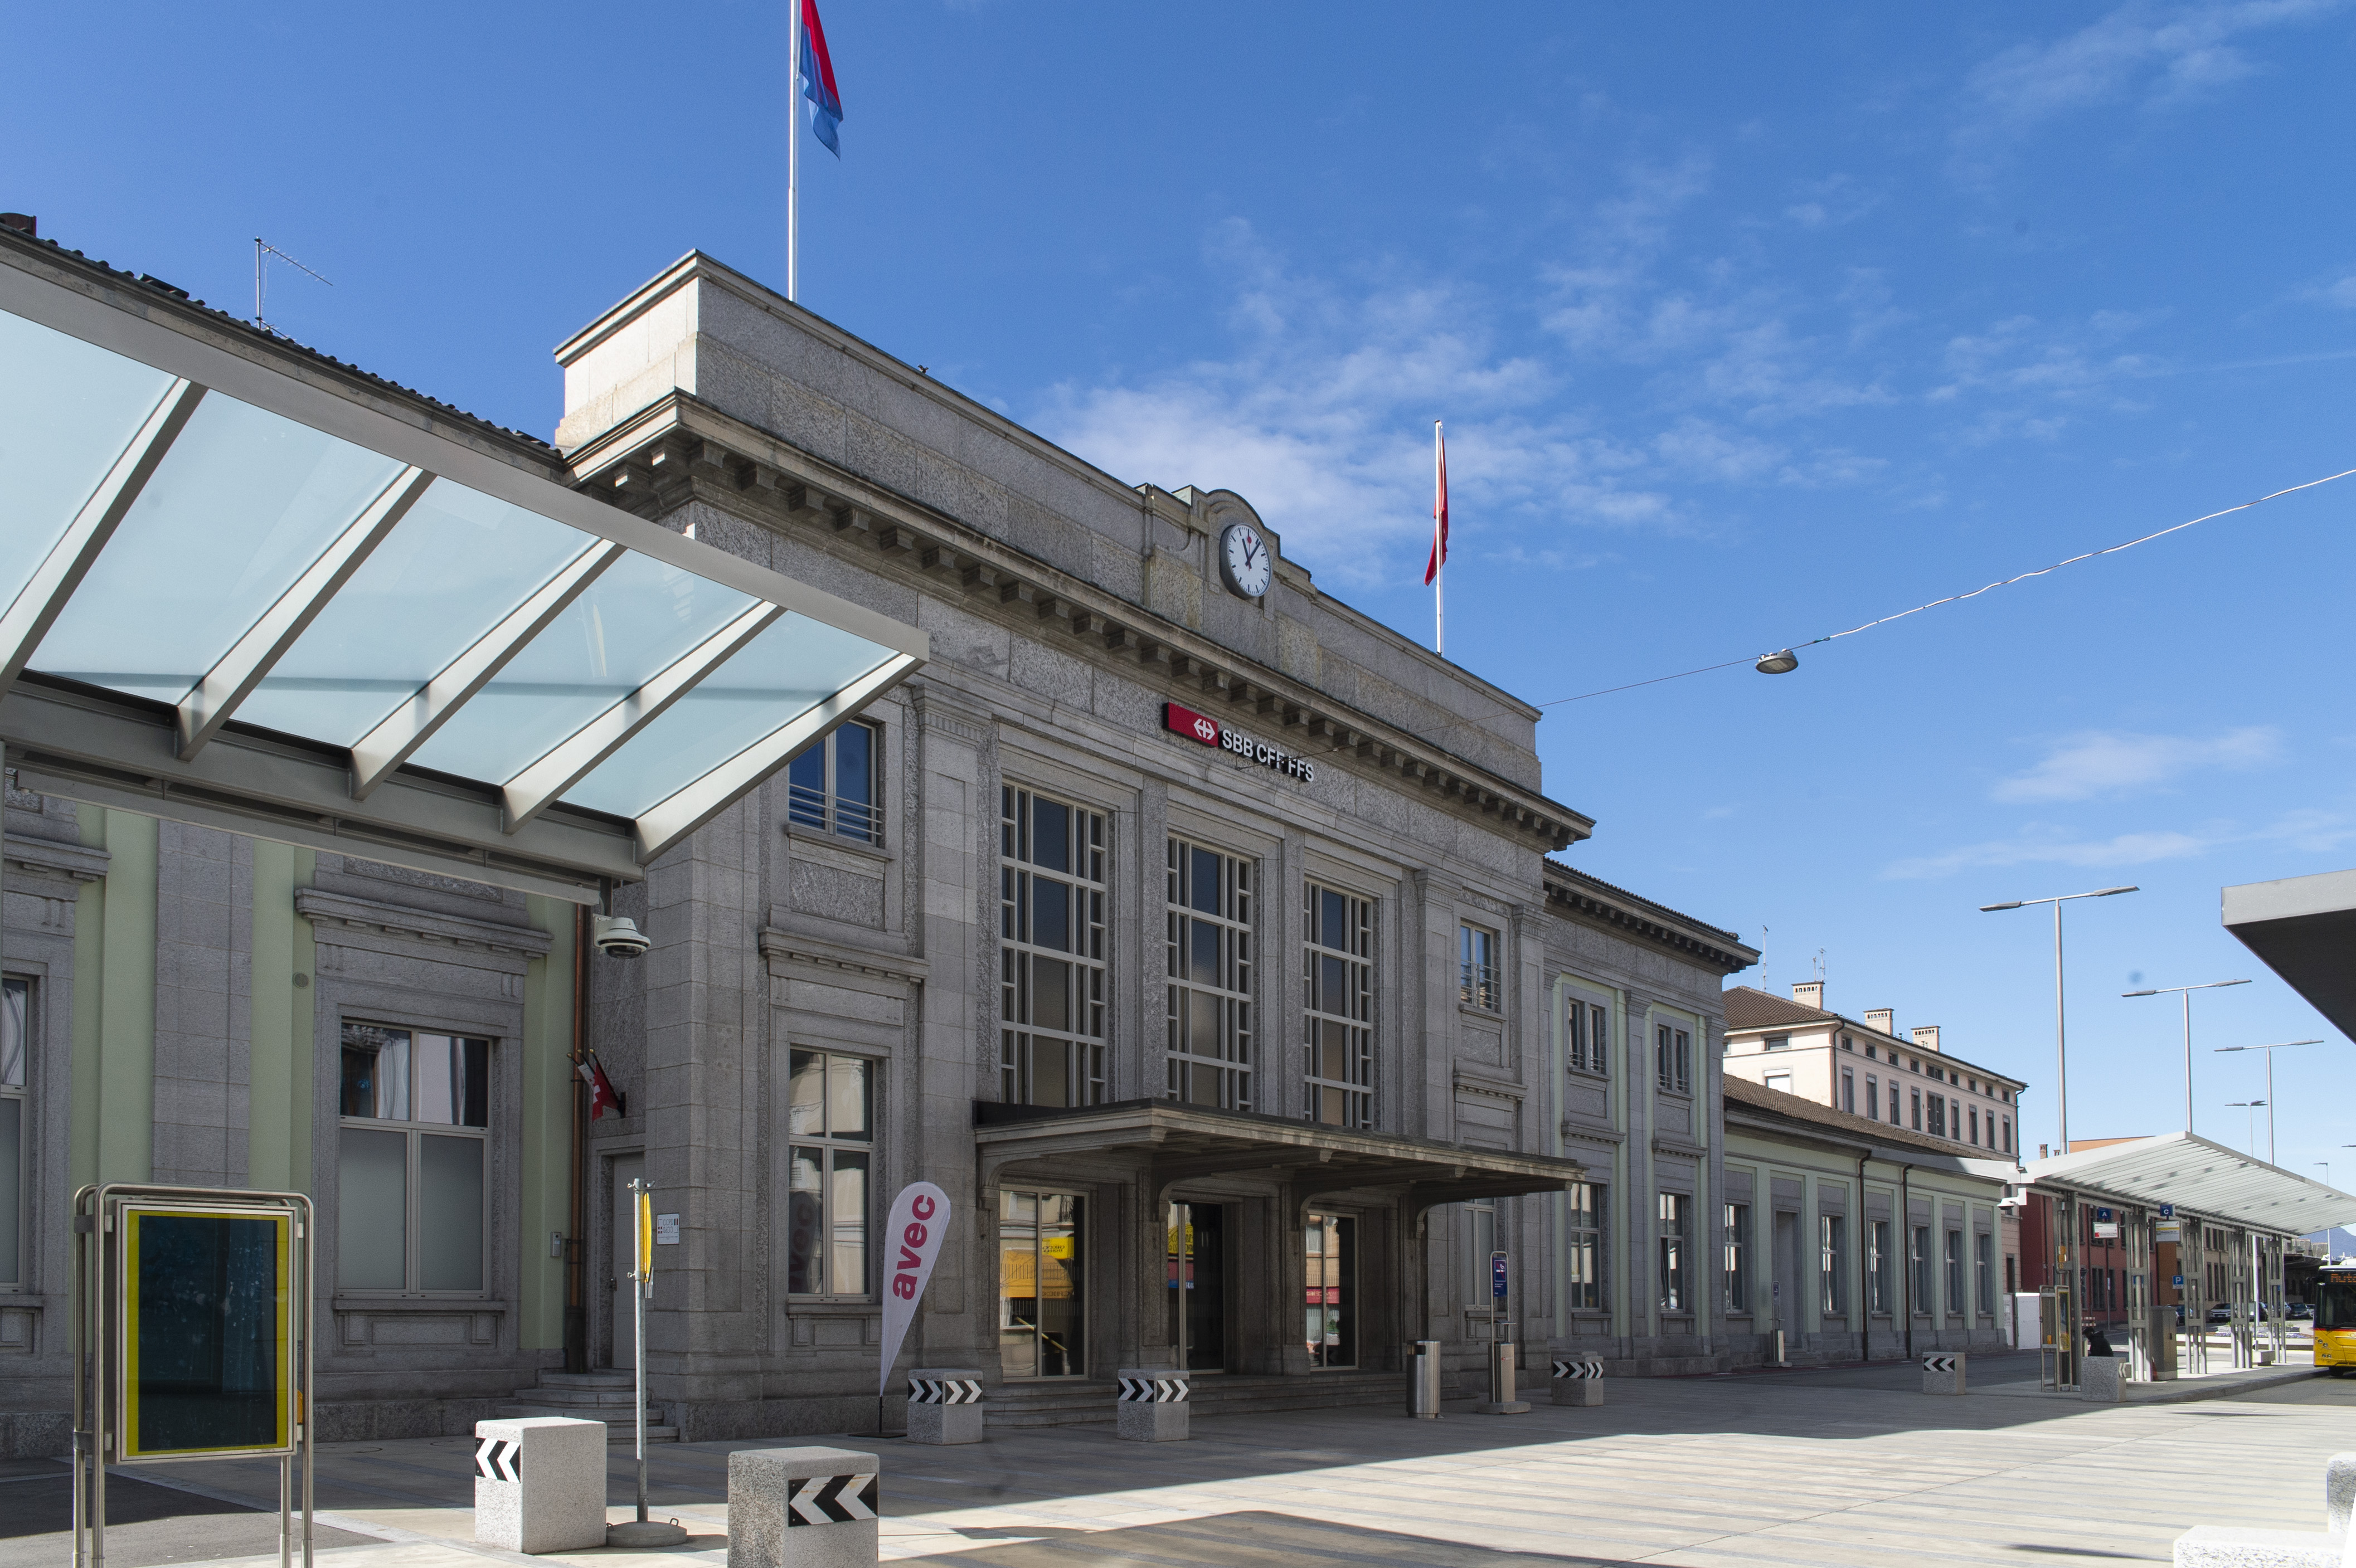 La facciata in stile Novecento della stazione ferroviaria di Chiasso.